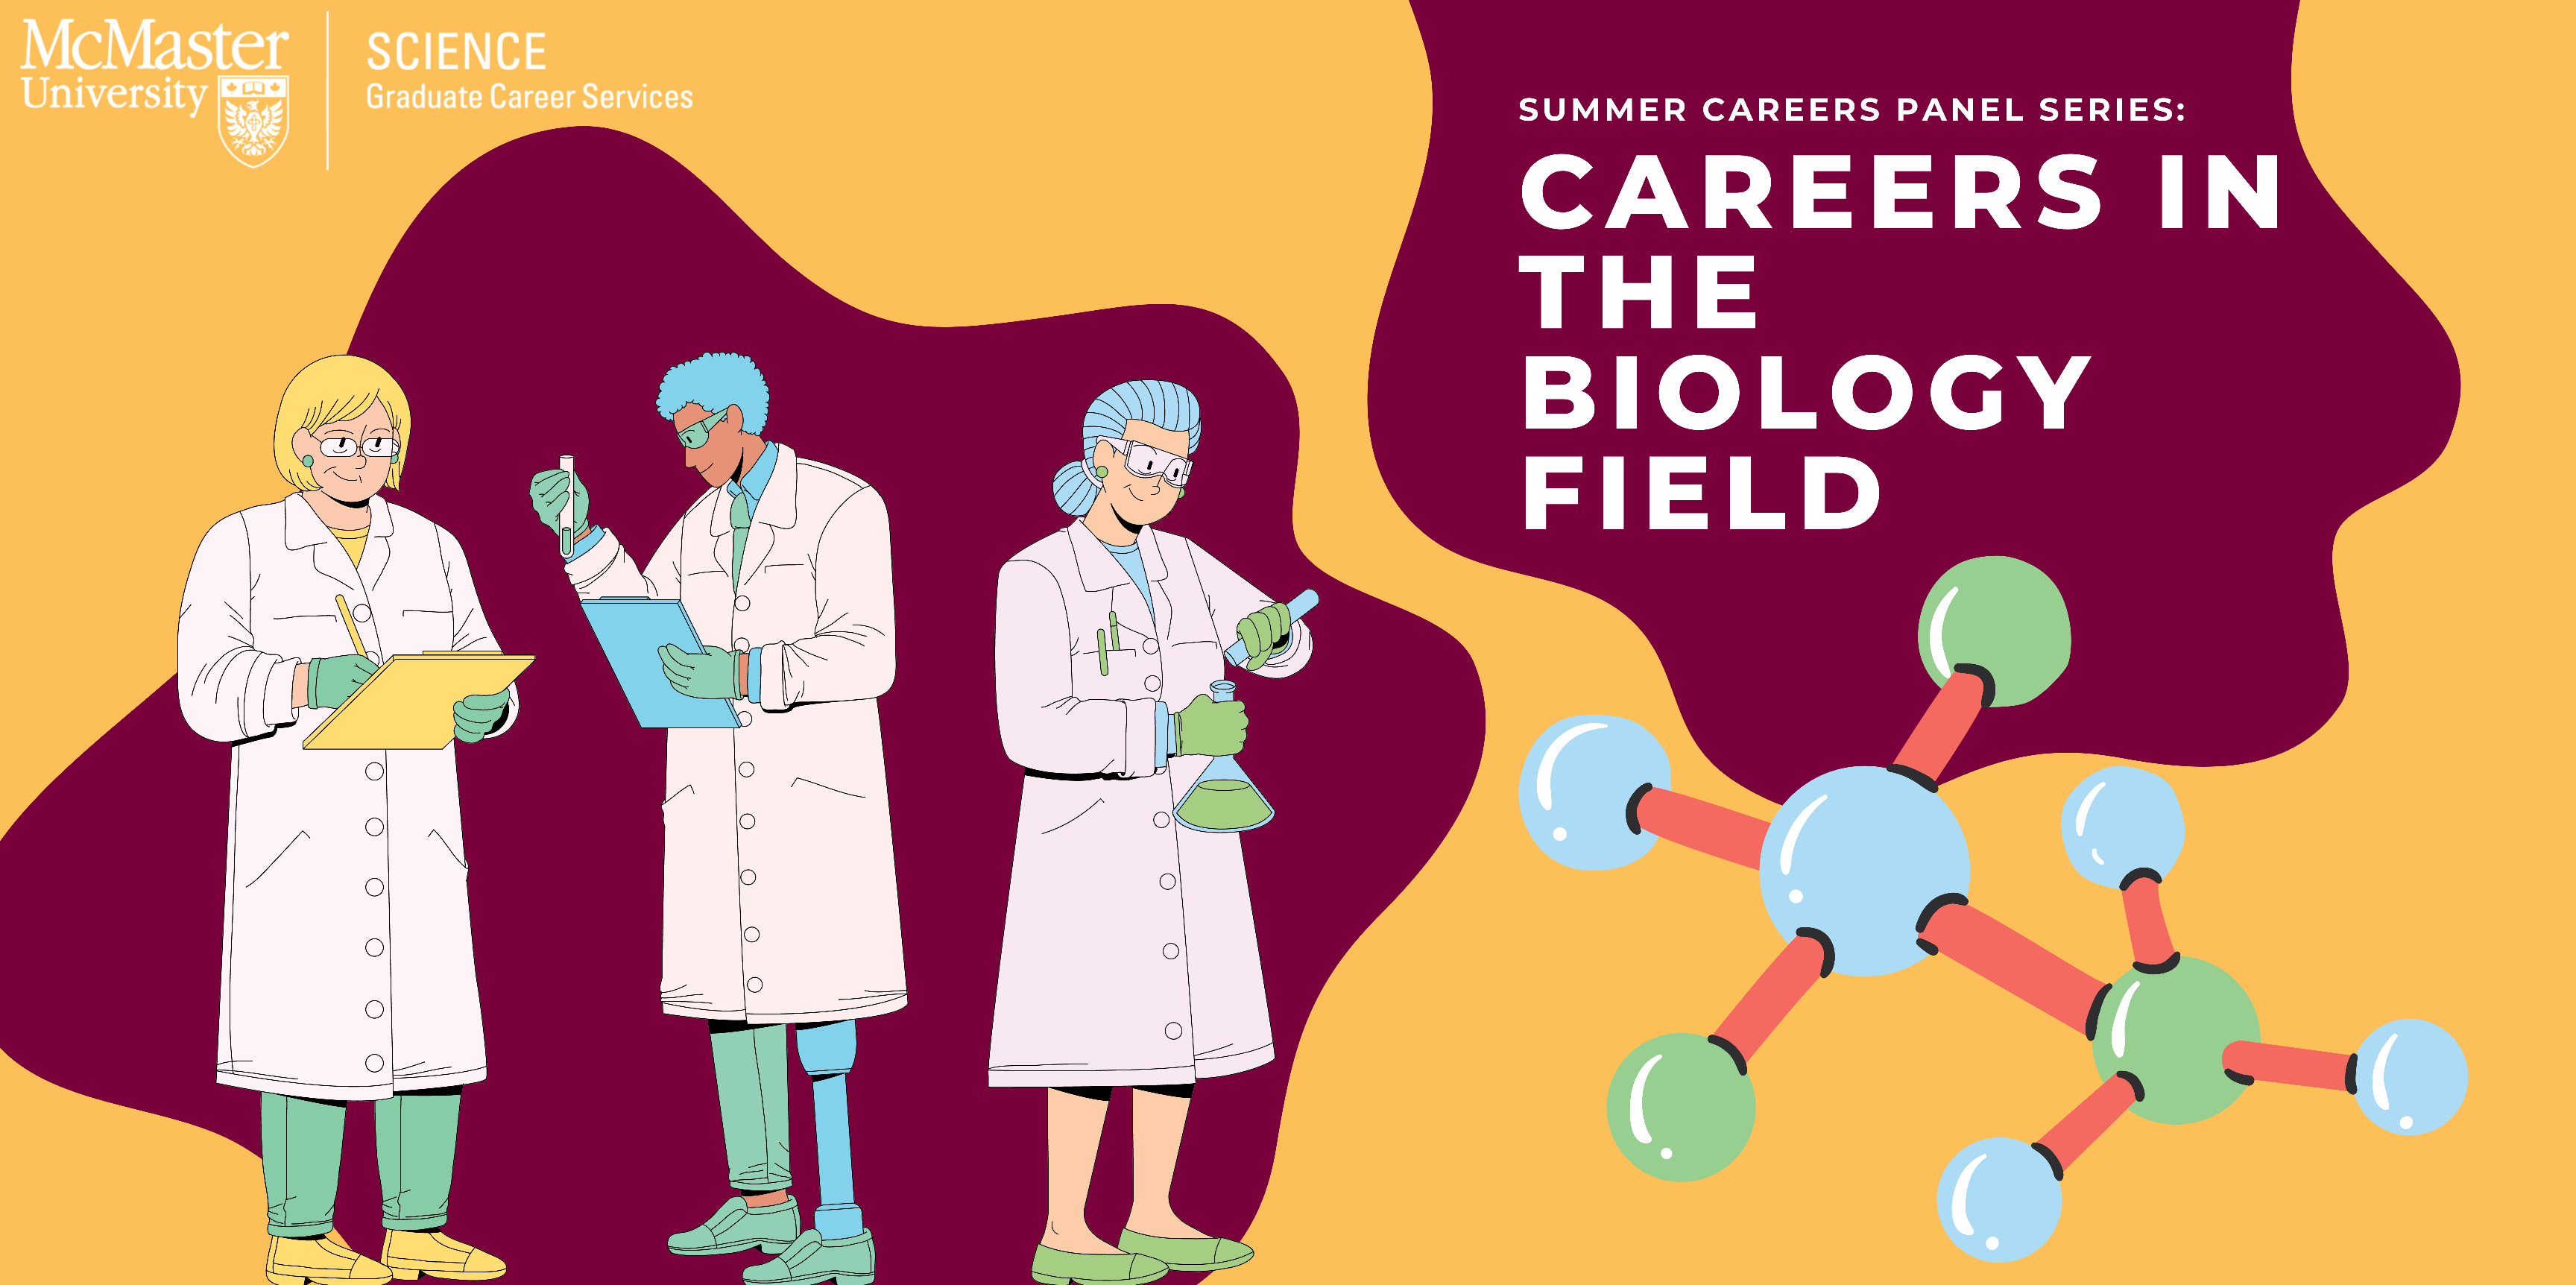 Summer Career Panels Series: Careers in the Biology Field